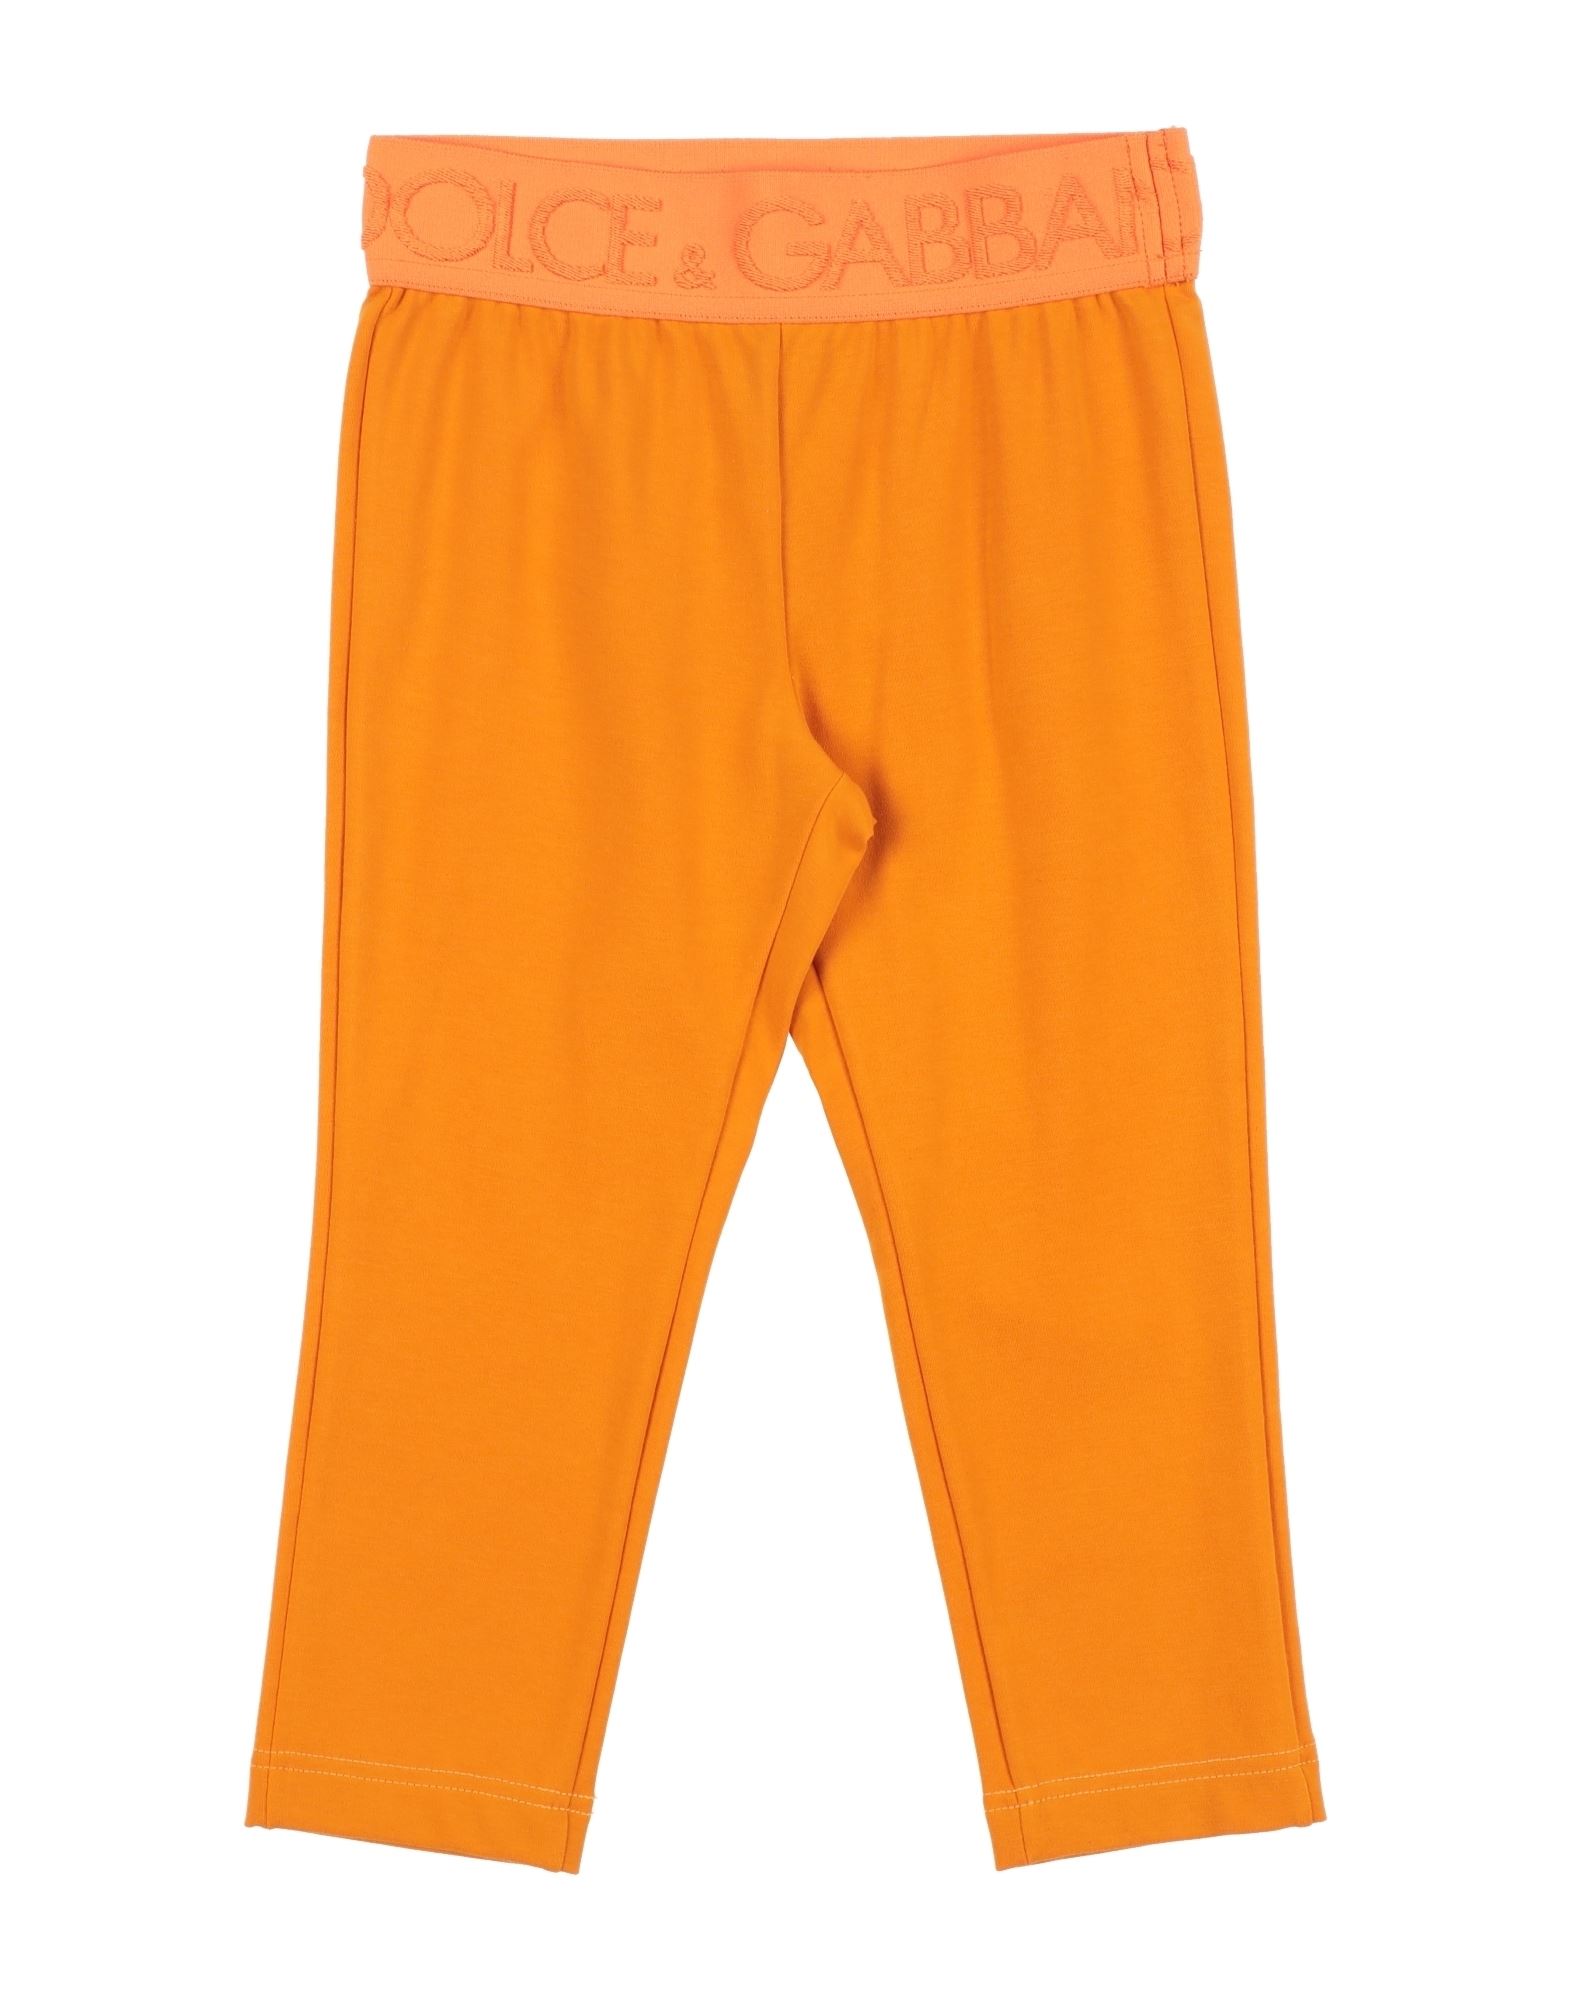 Dolce & Gabbana Kids' Leggings In Orange